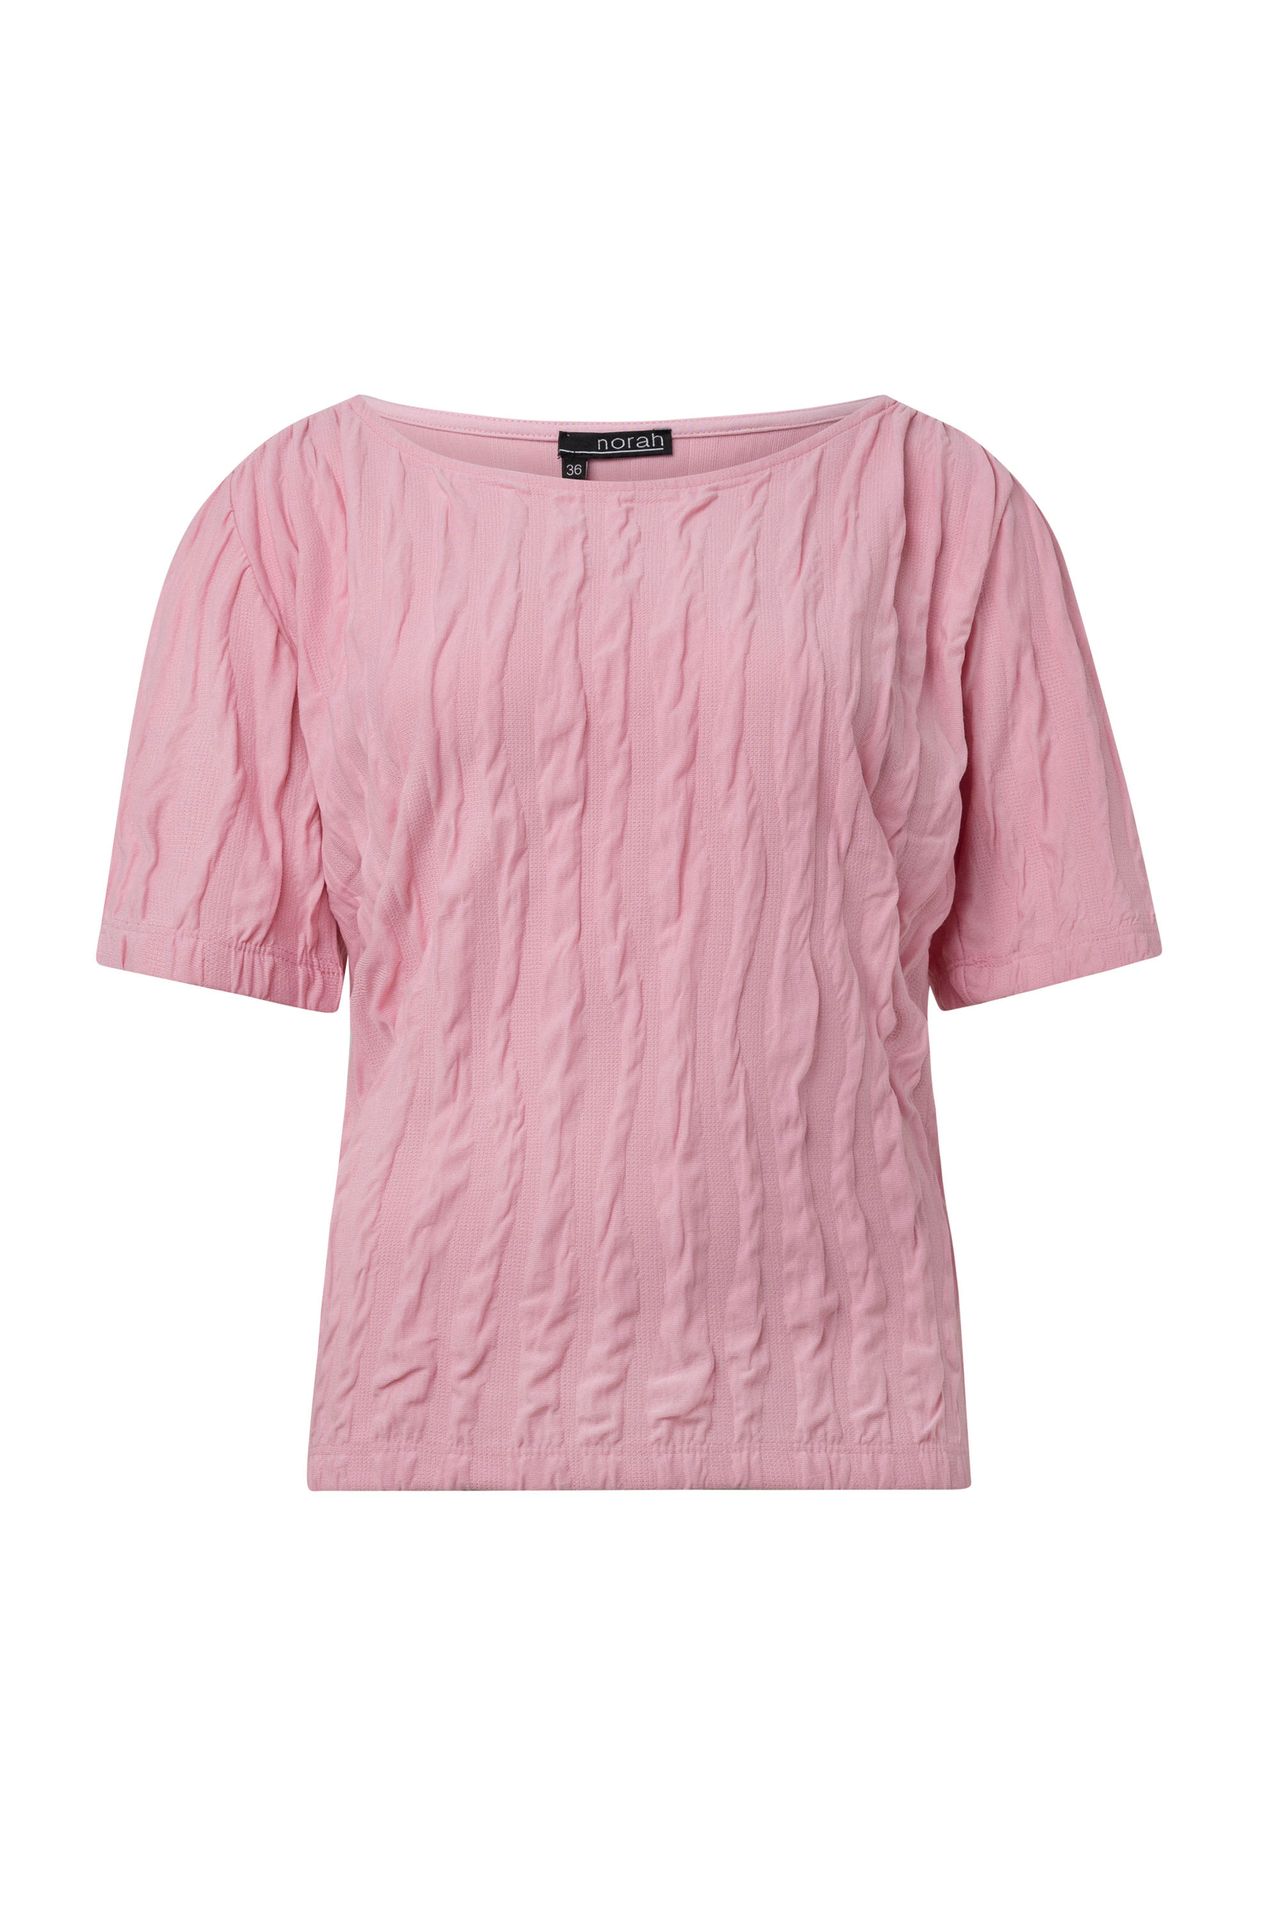 Norah Roze shirt pastel rose 214791-903